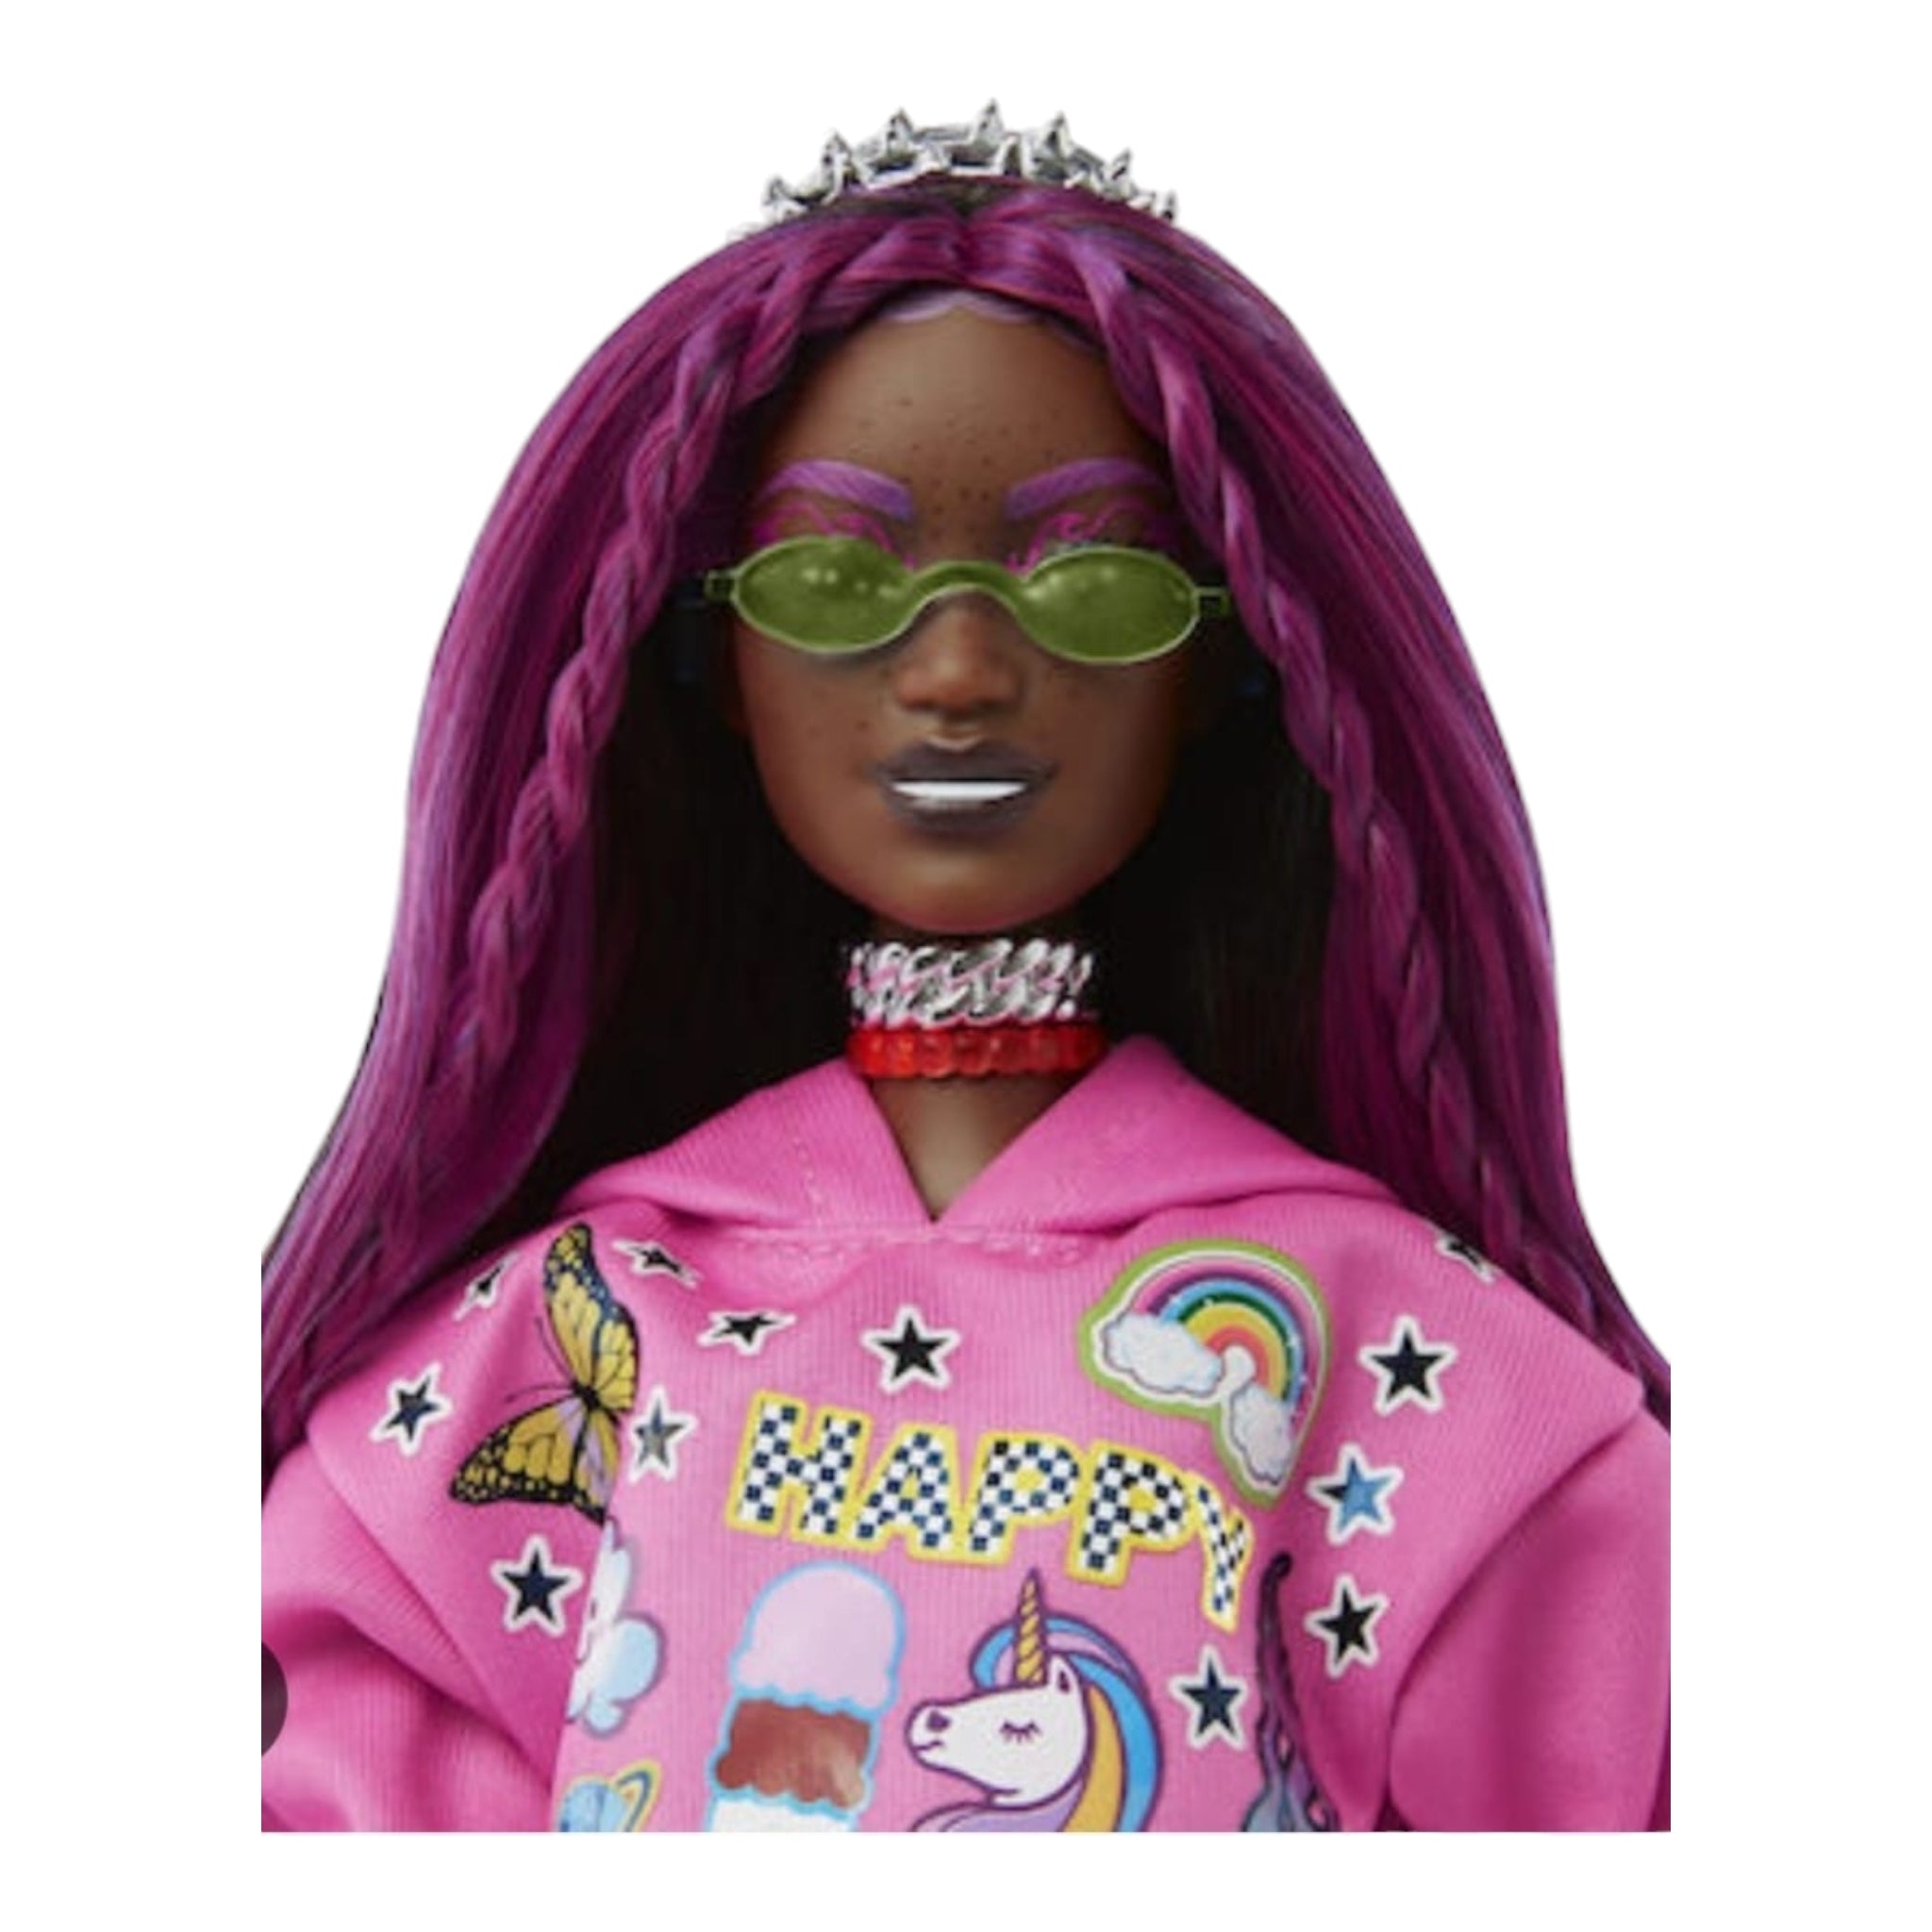 Prachtige, roze barbie pop met donkere huidskleur. Te koop bij Colourful Goodies.